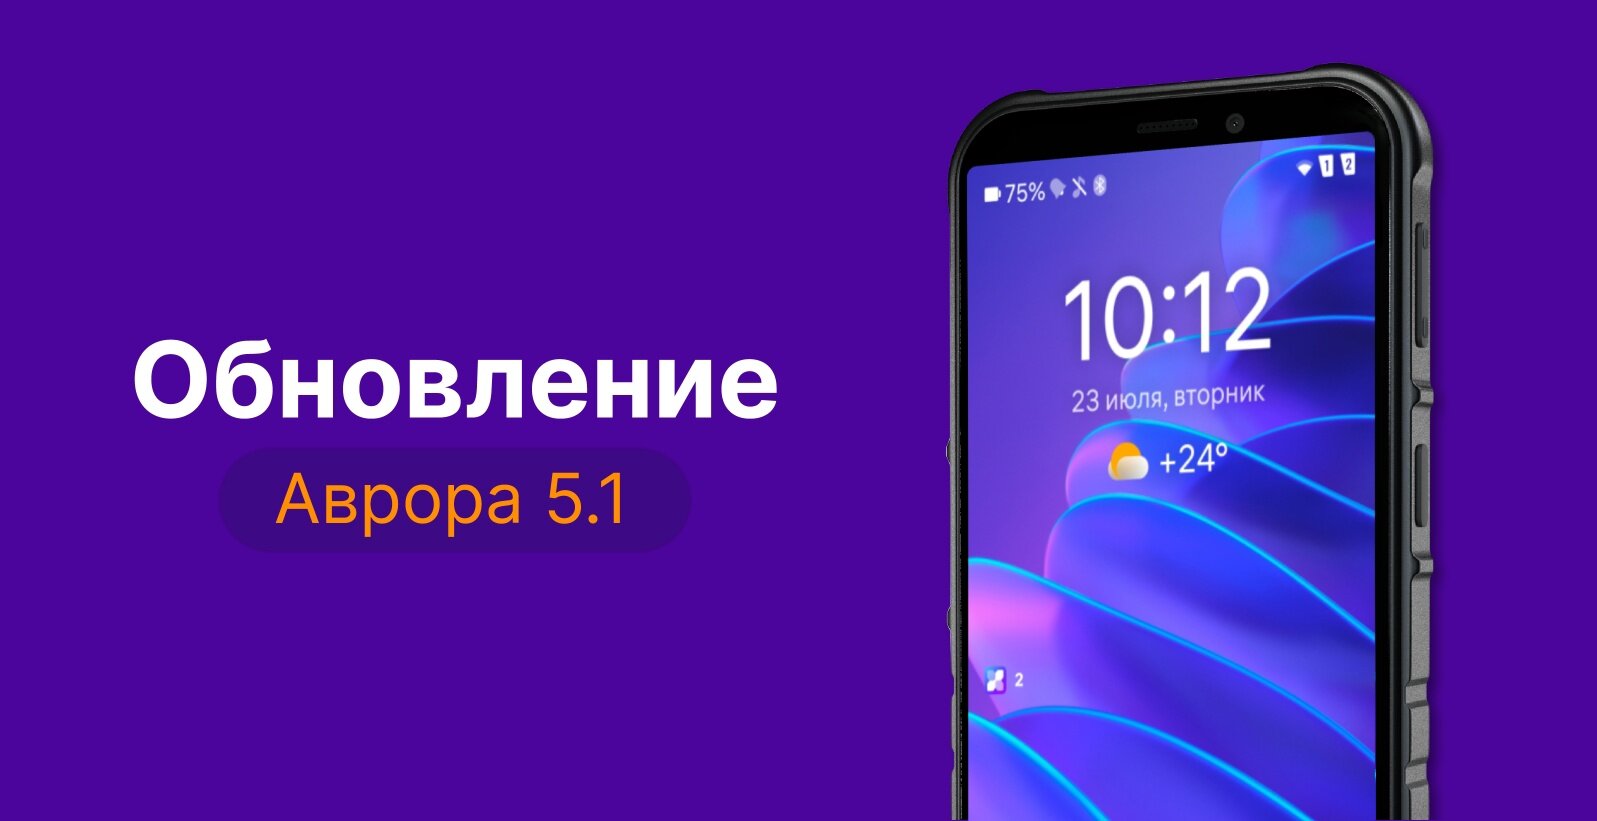 Российскую систему «Аврора» 5.1 уже можно установить на смартфон Fplus R570E. Чем интересна